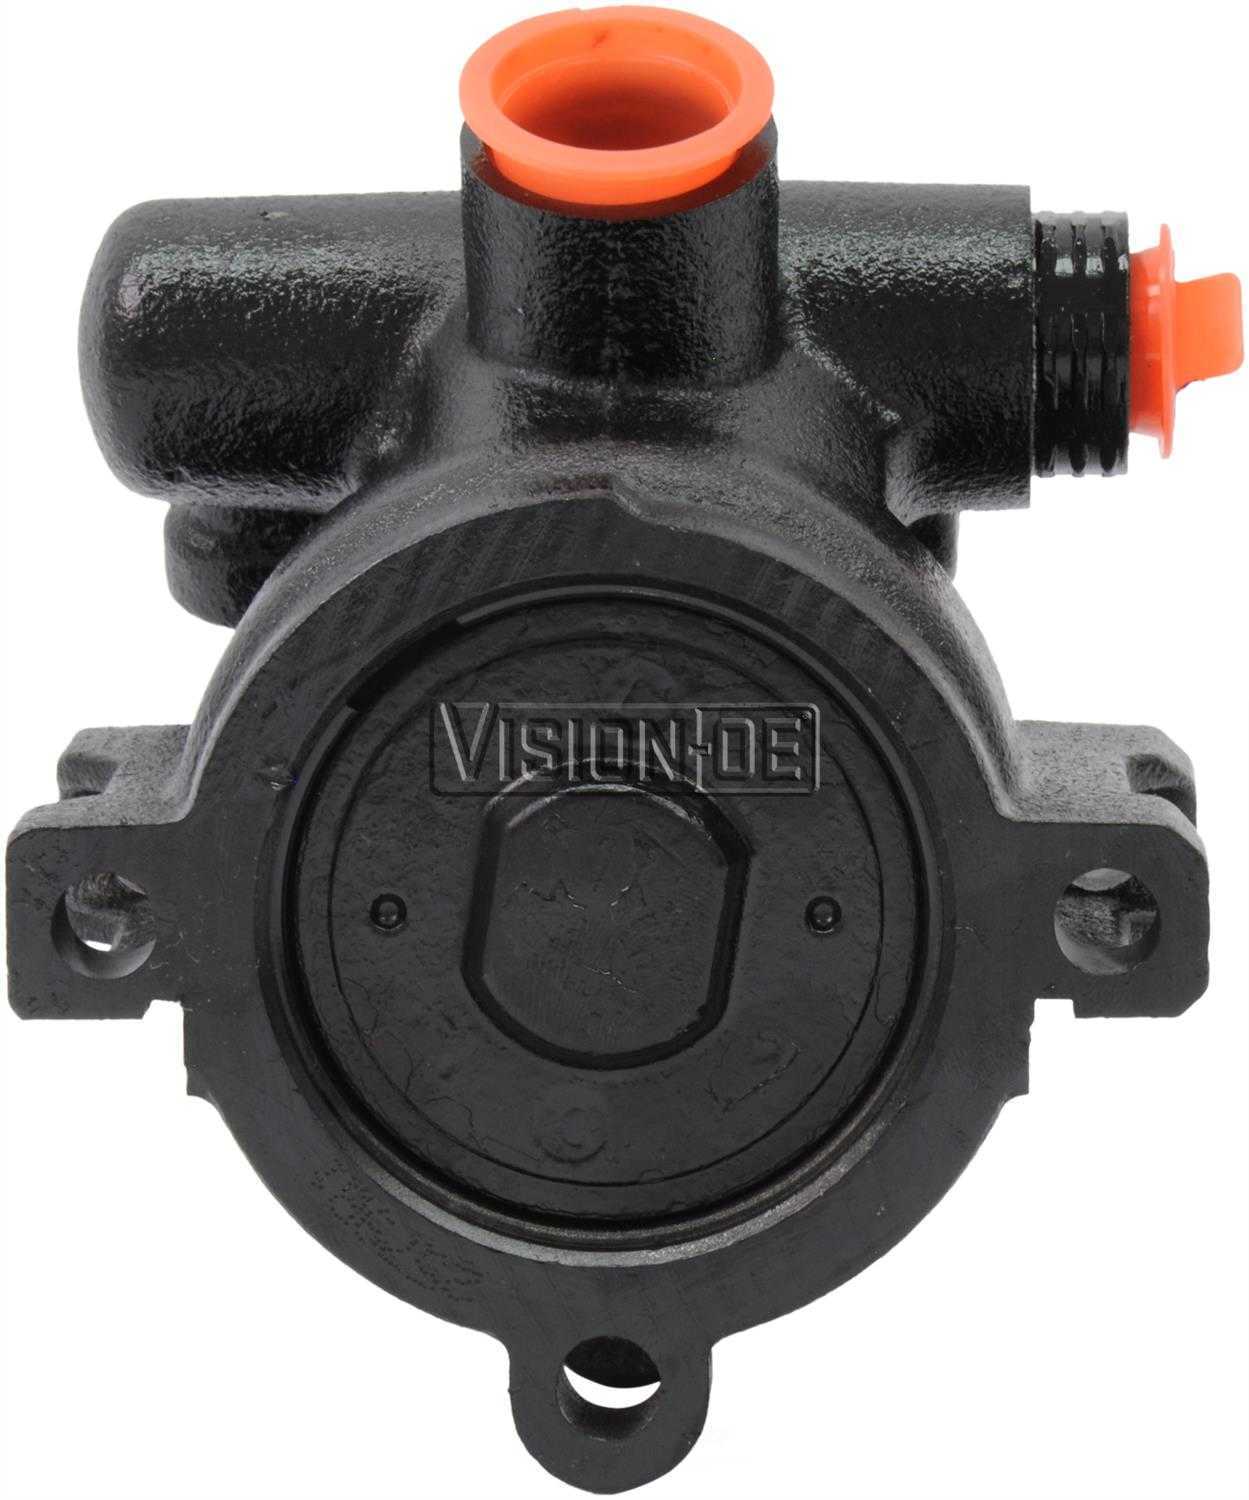 VISION-OE - Reman Power Steering Pump - VOE 733-0104